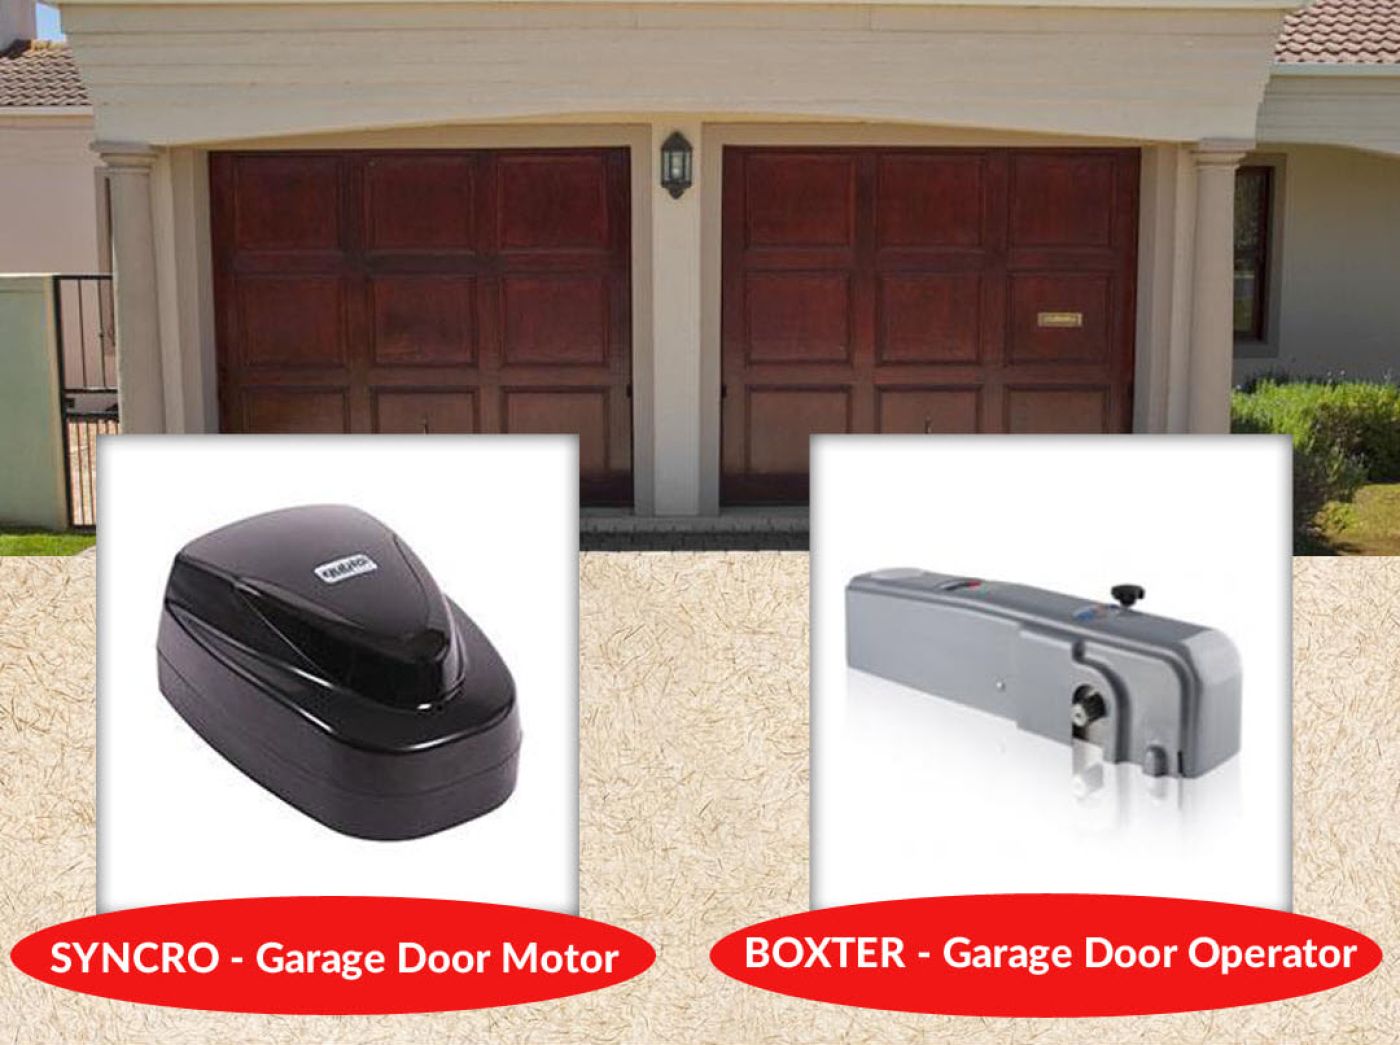 Ultimate buying guide for garage door opener